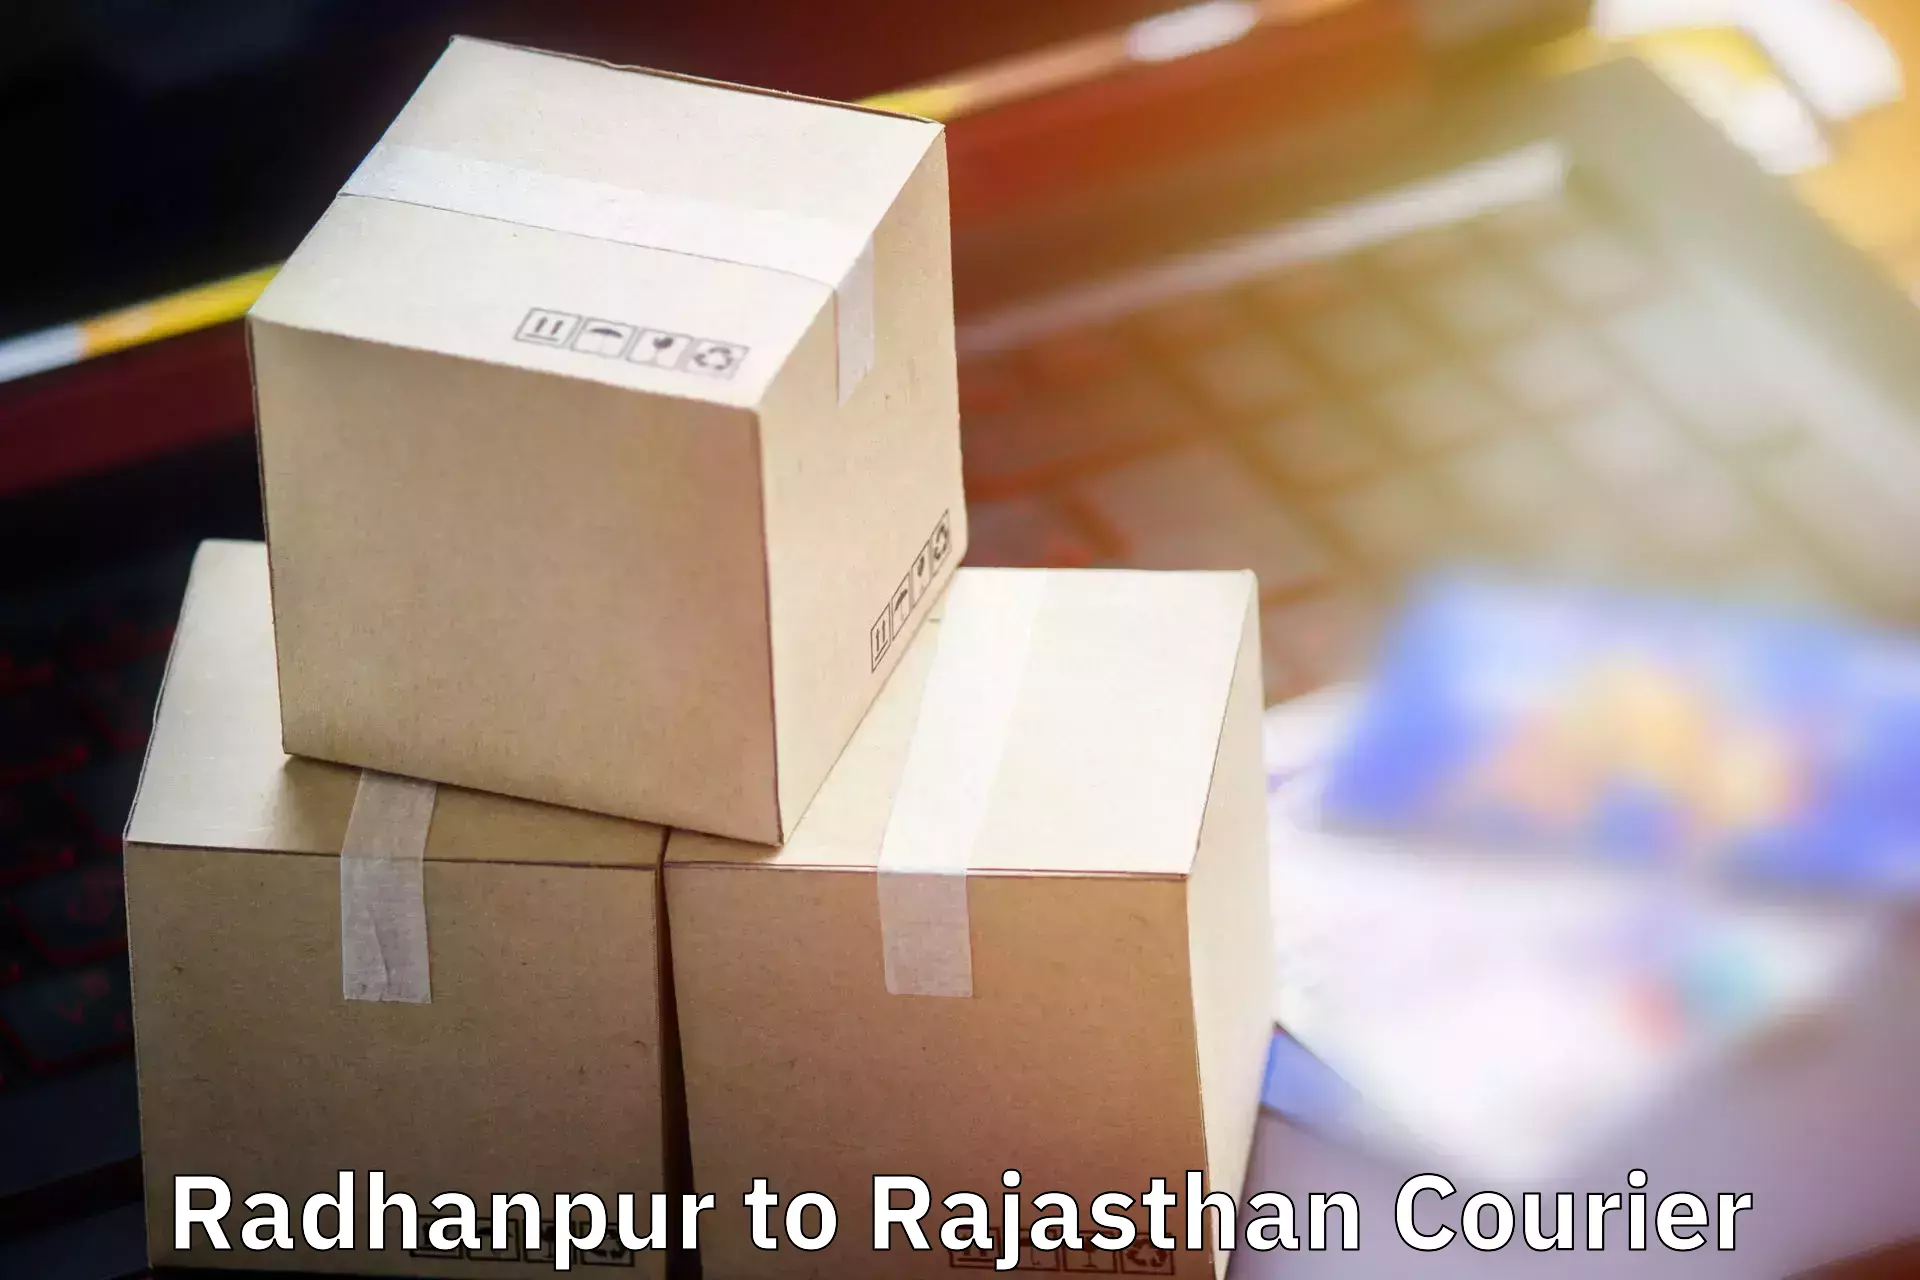 Baggage transport scheduler Radhanpur to Hanumangarh